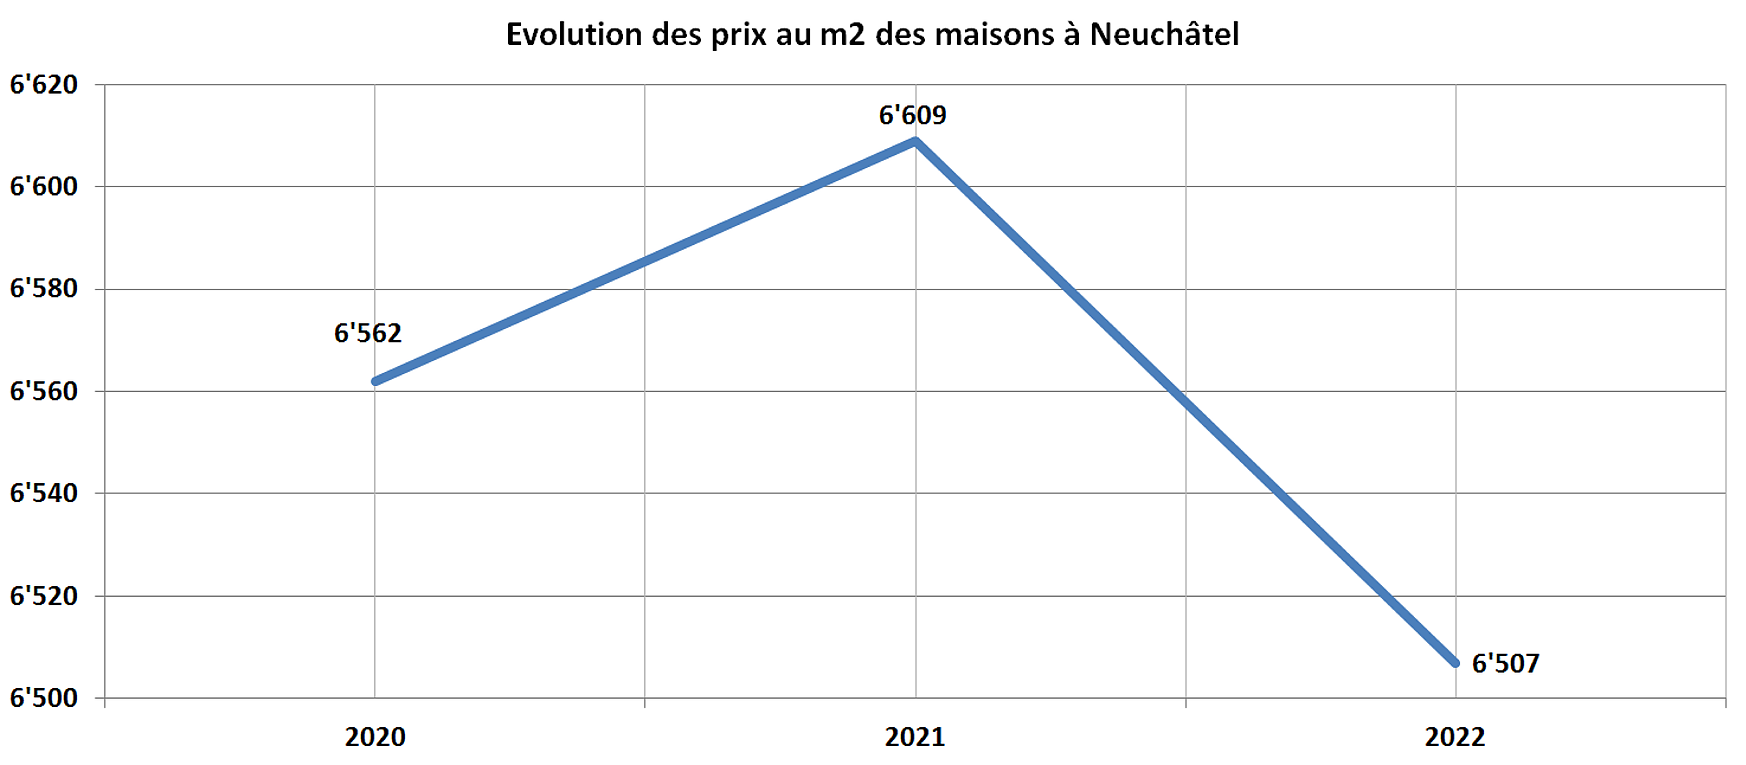 evolution prix m2 maison neuchatel 2022